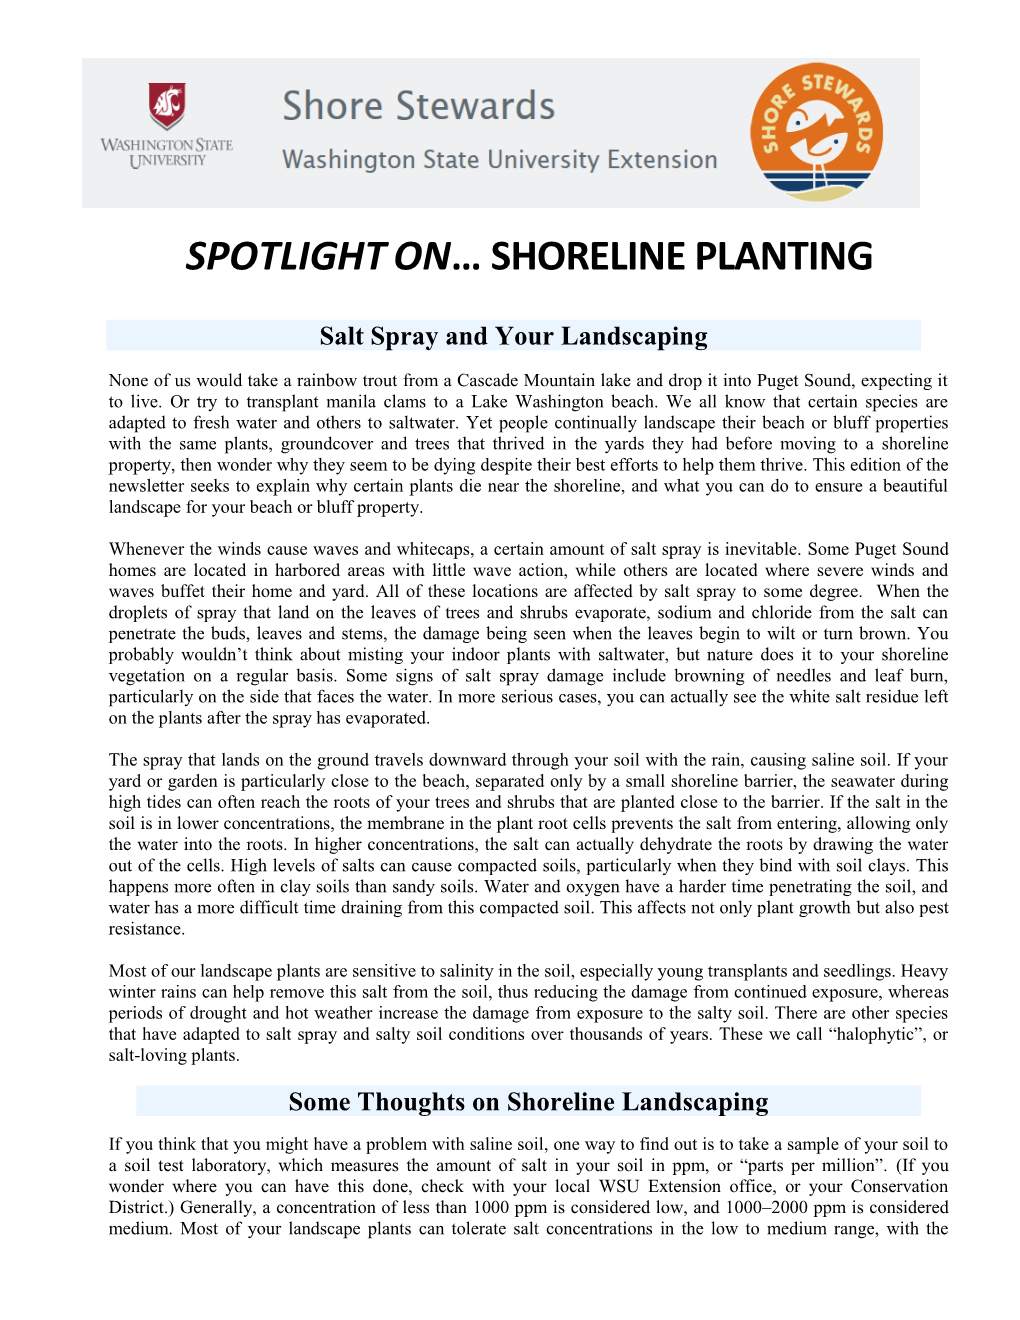 Spotlight on Shoreline Planting